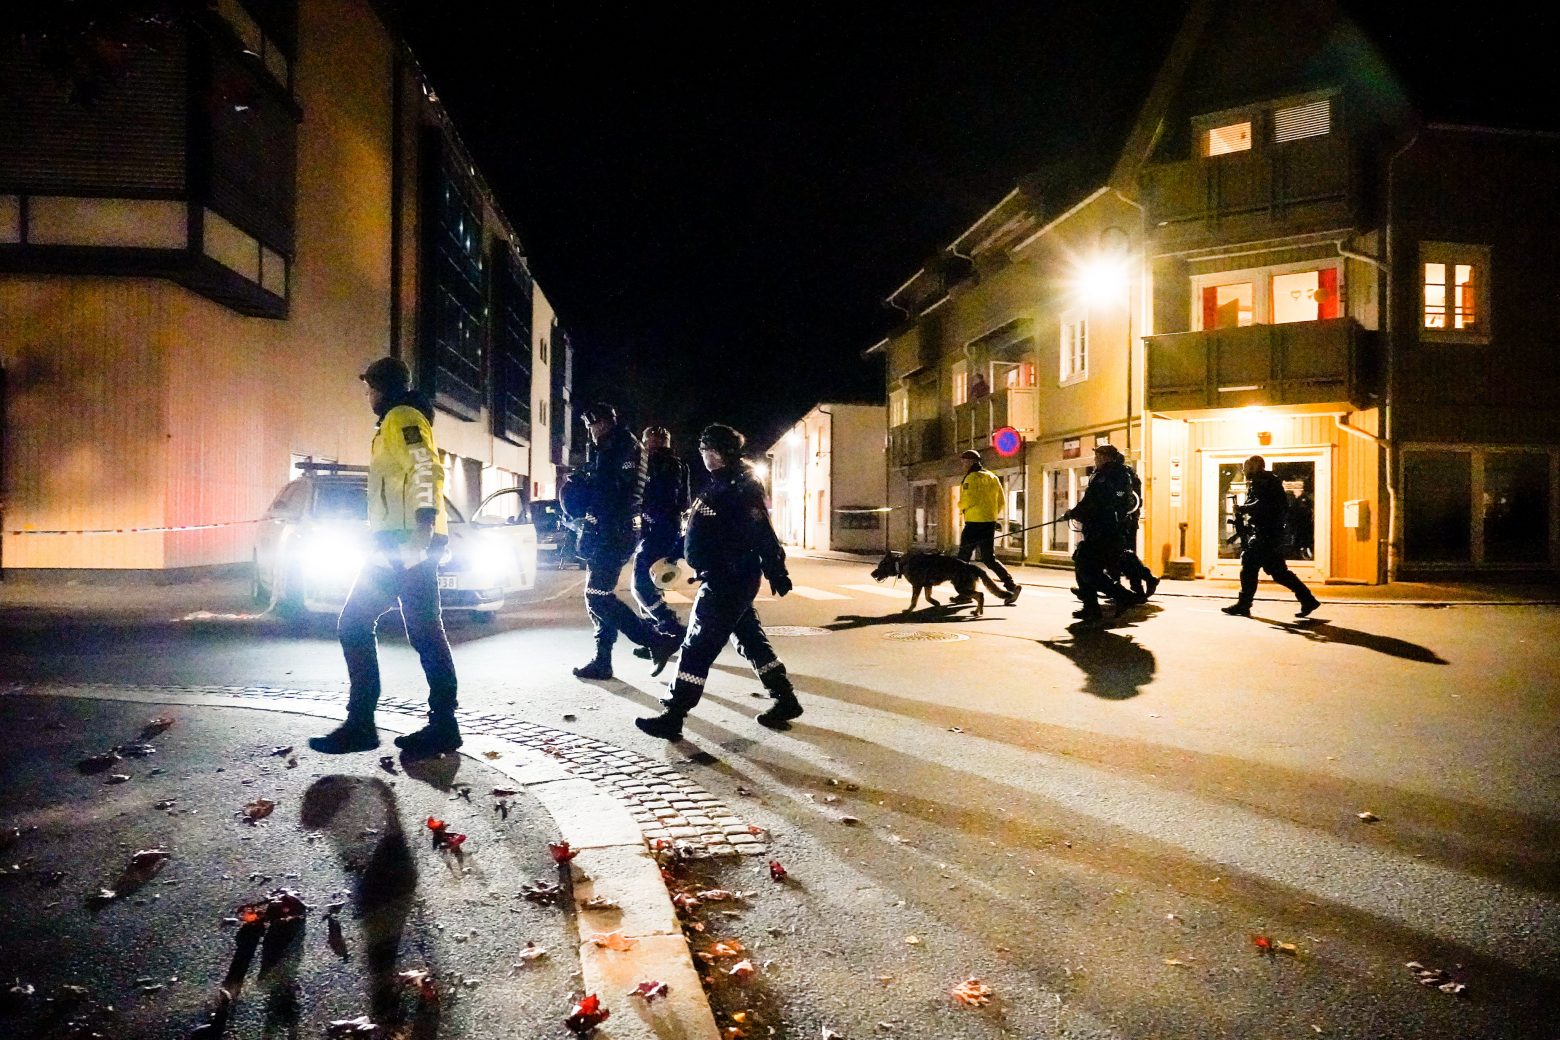 Νορβηγία - Τουλάχιστον τέσσερις νεκροί από τον τοξοβόλο - Ανοιχτό το ενδεχόμενο για τρομοκρατική επίθεση